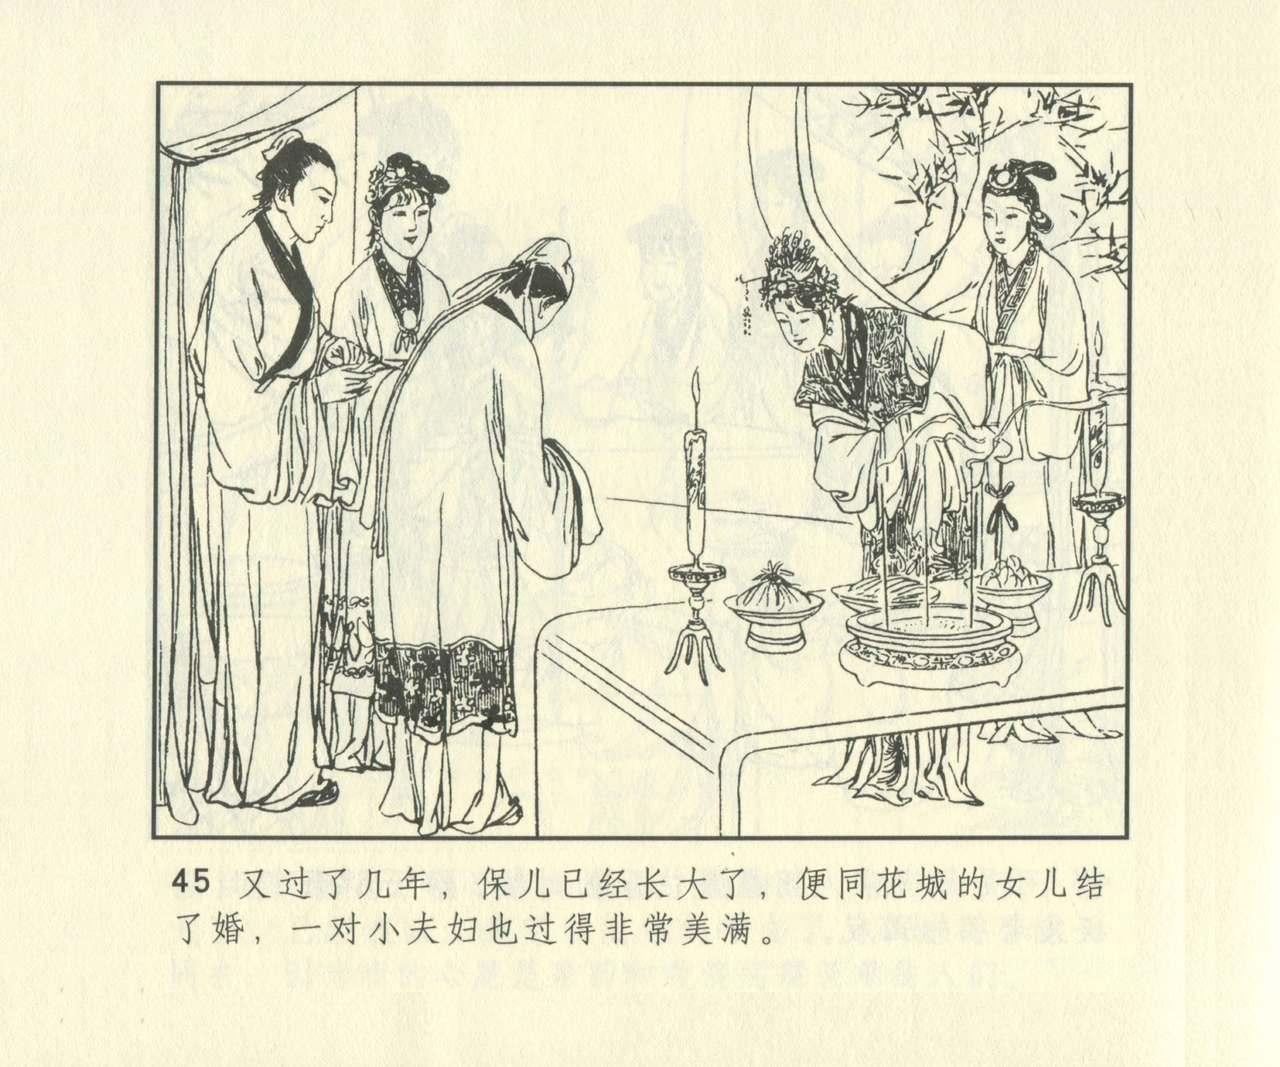 聊斋志异 张玮等绘 天津人民美术出版社 卷二十一 ~ 三十 661